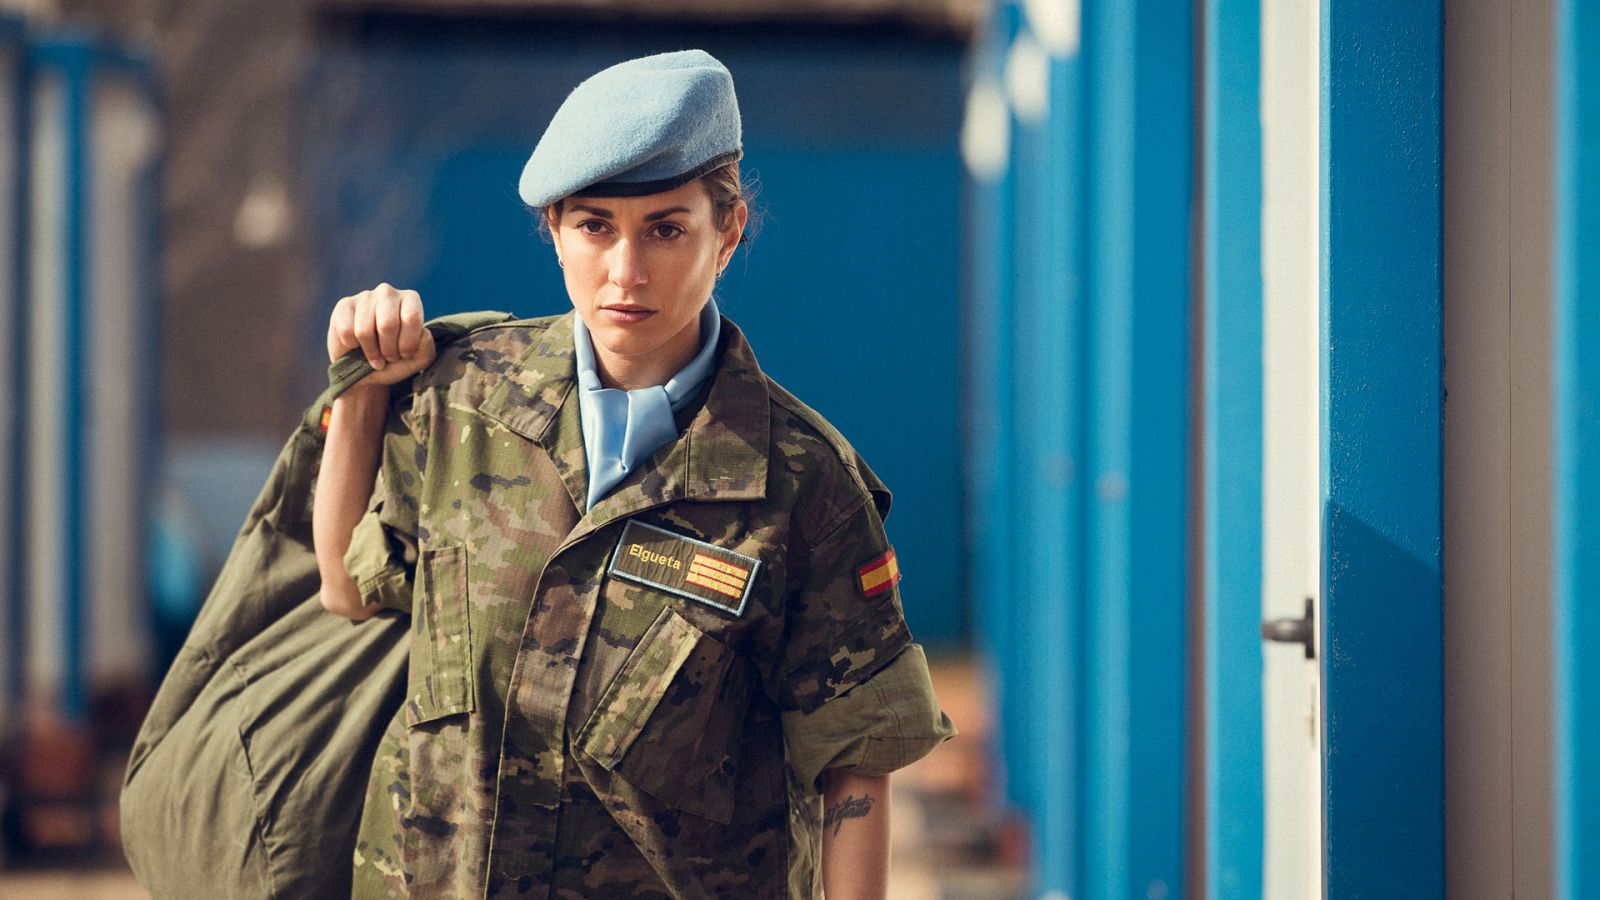 Fuerza de paz - Sargento Paula Elgueta (Silvia Alonso)